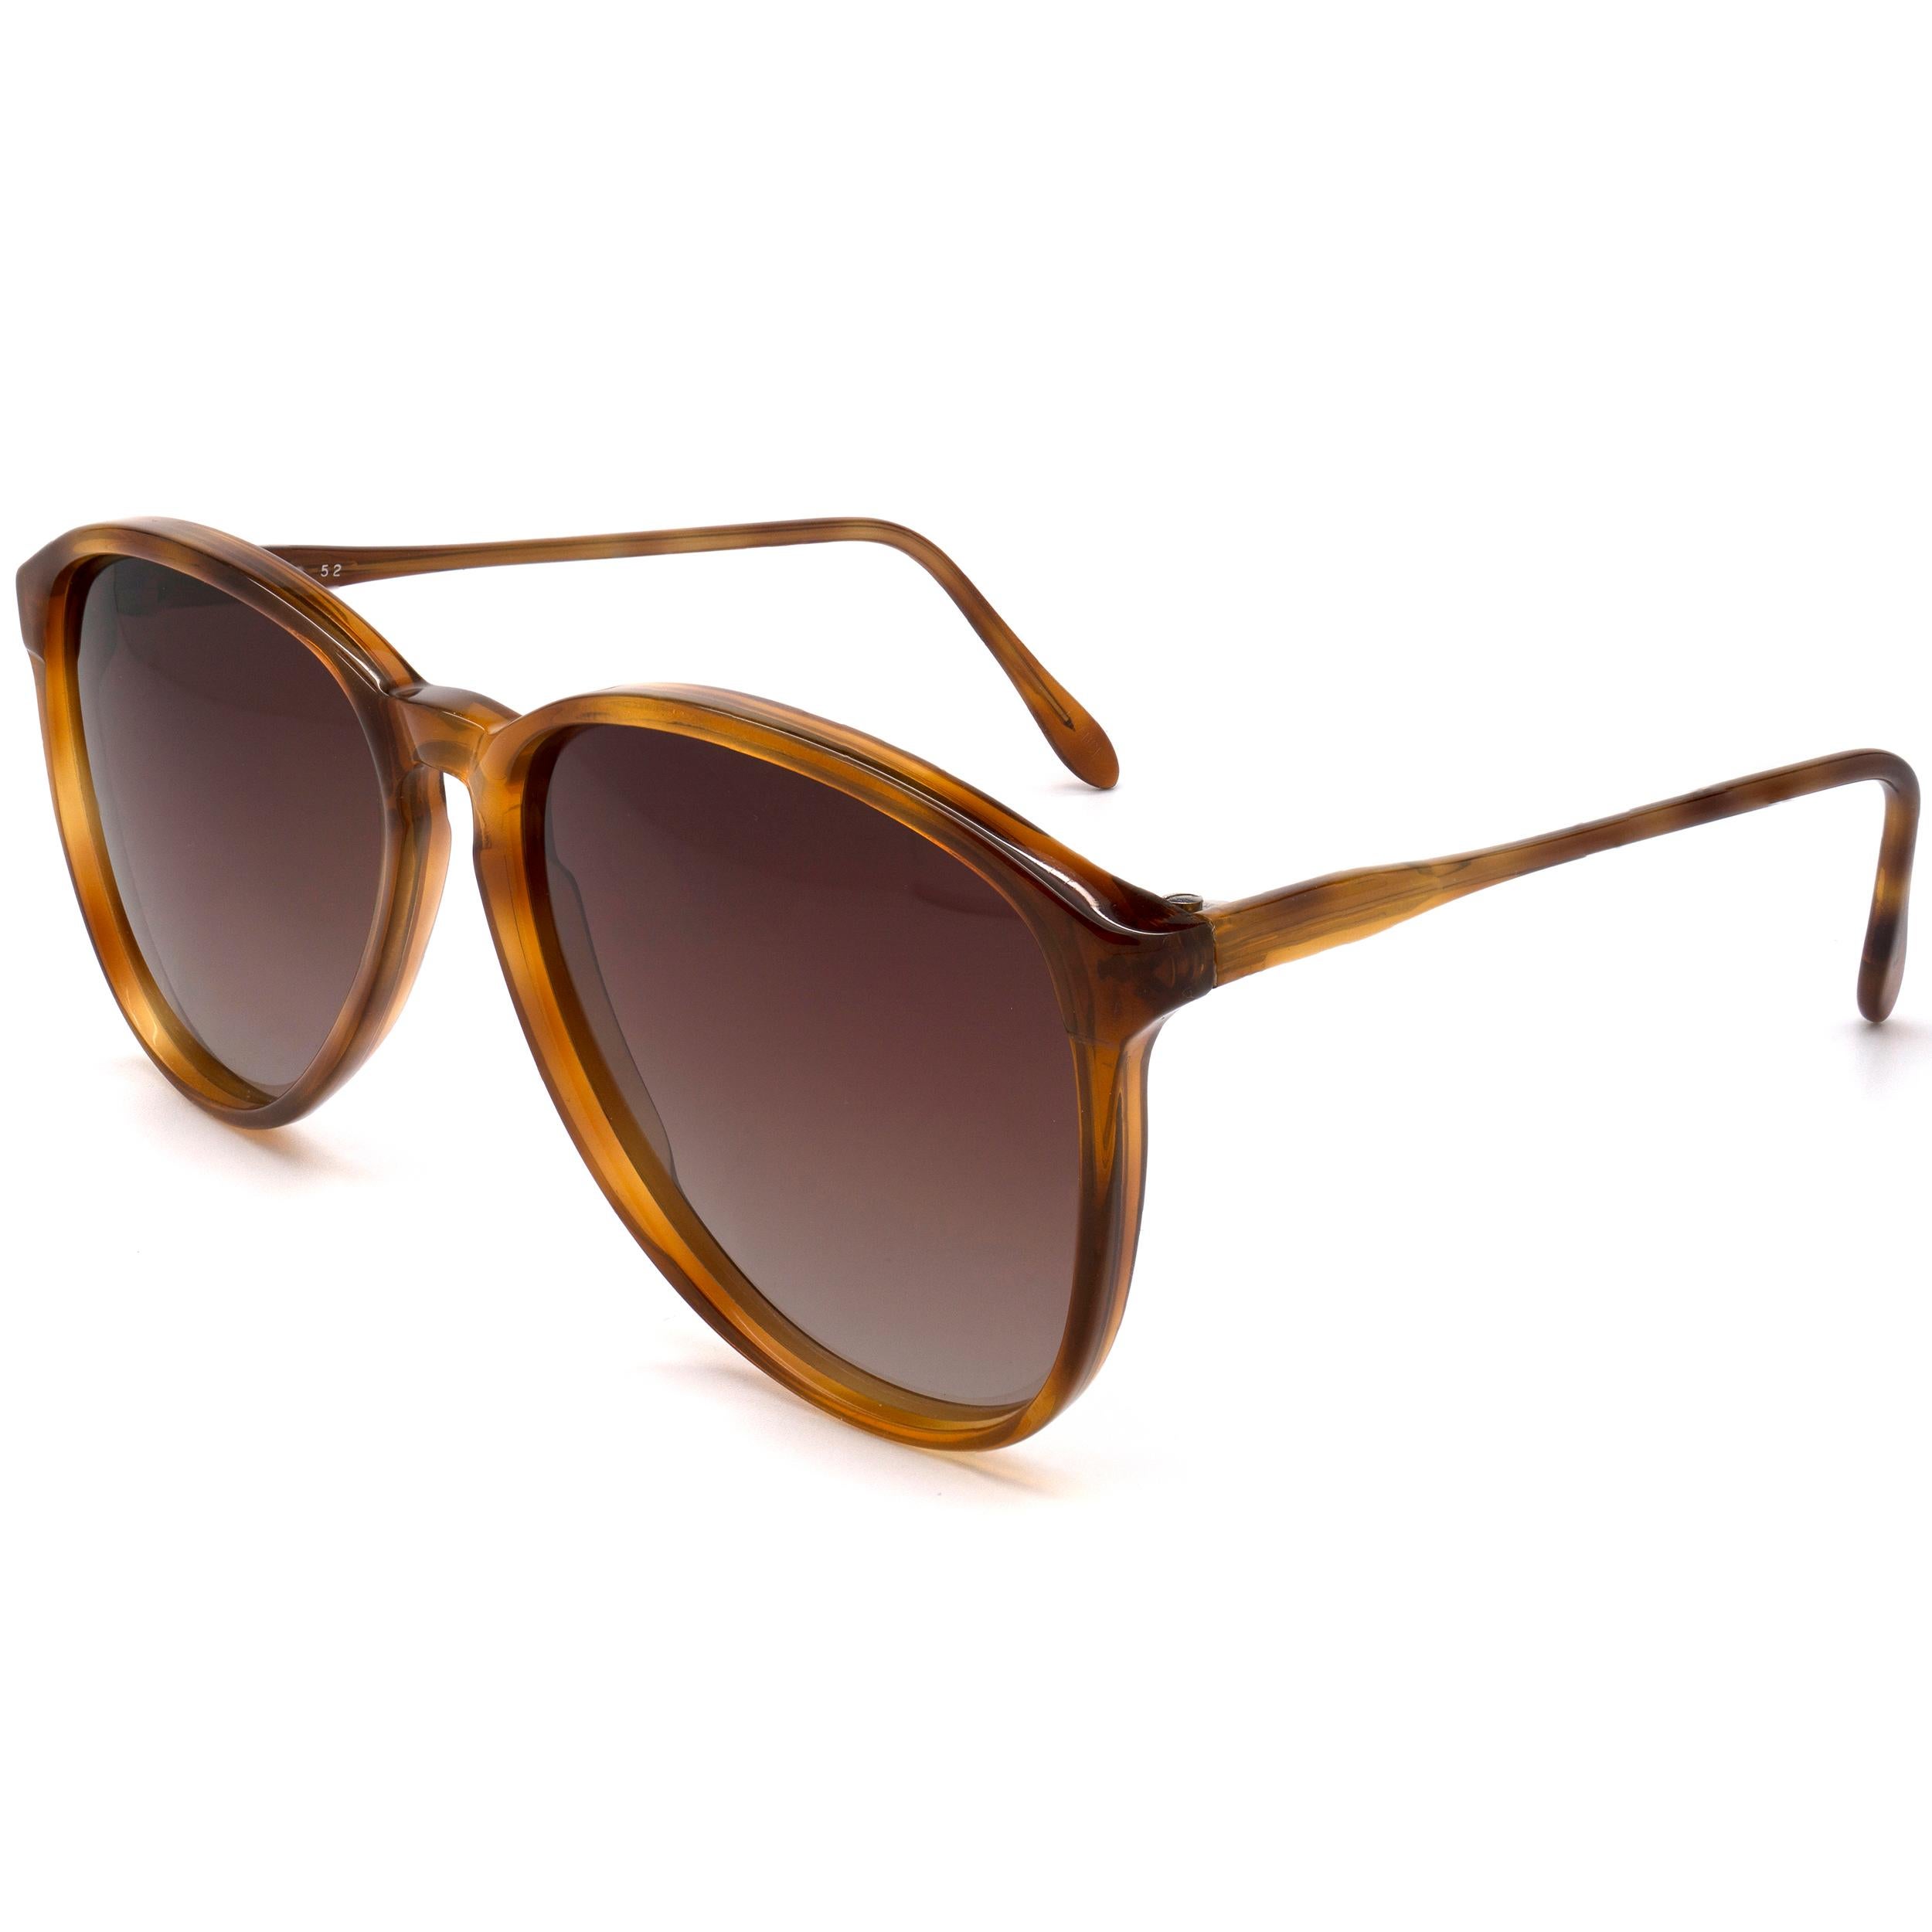 70s aviator sunglasses